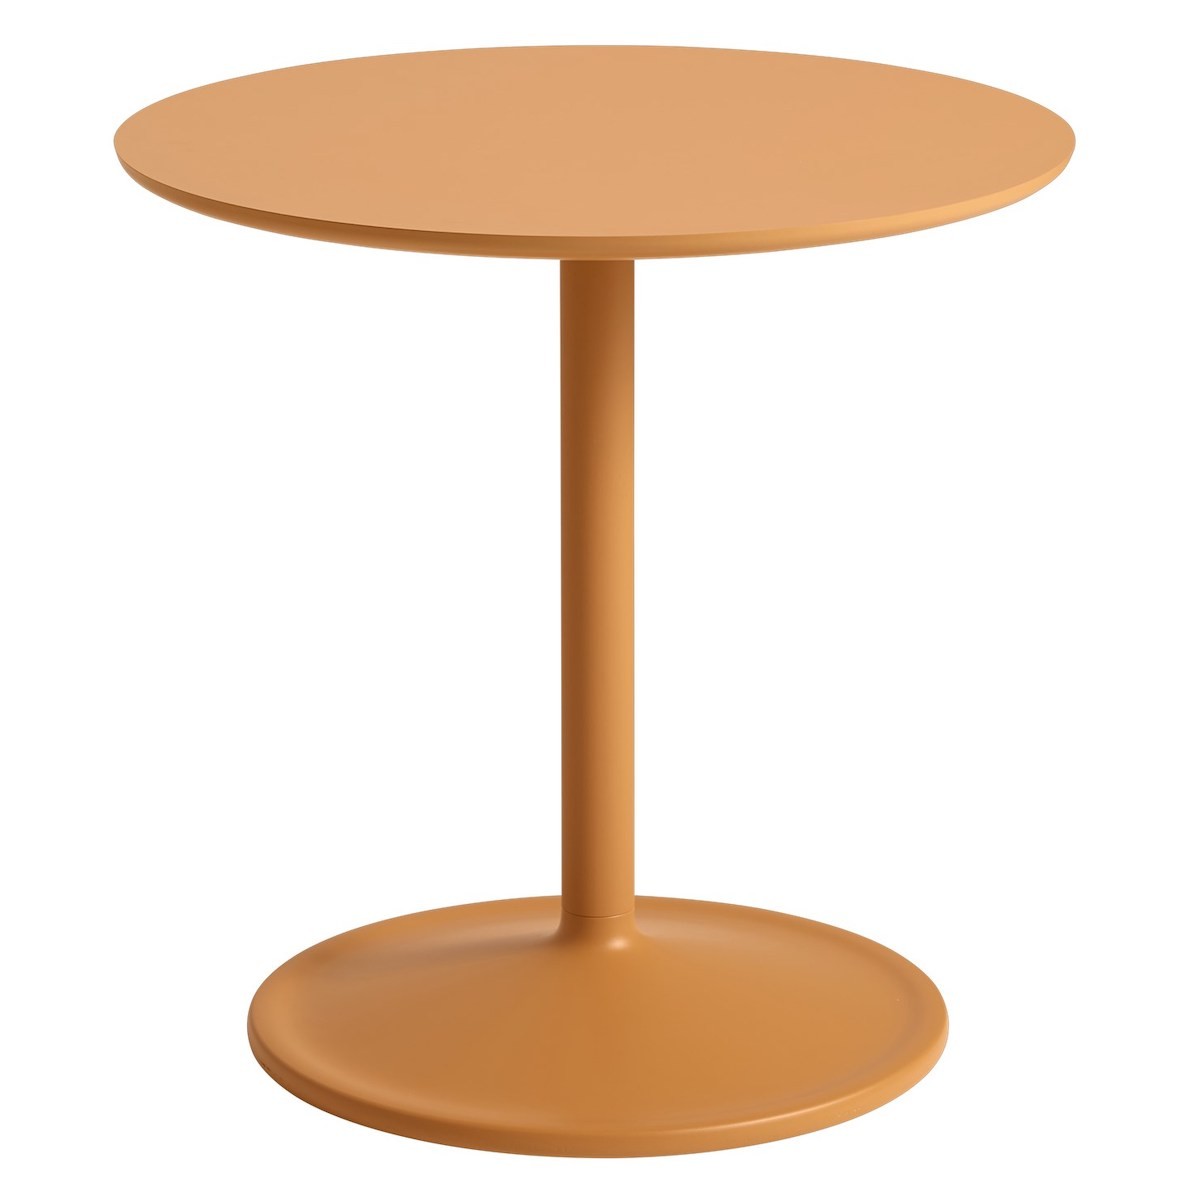 Orange - Ø48cm, H48cm - Soft side table